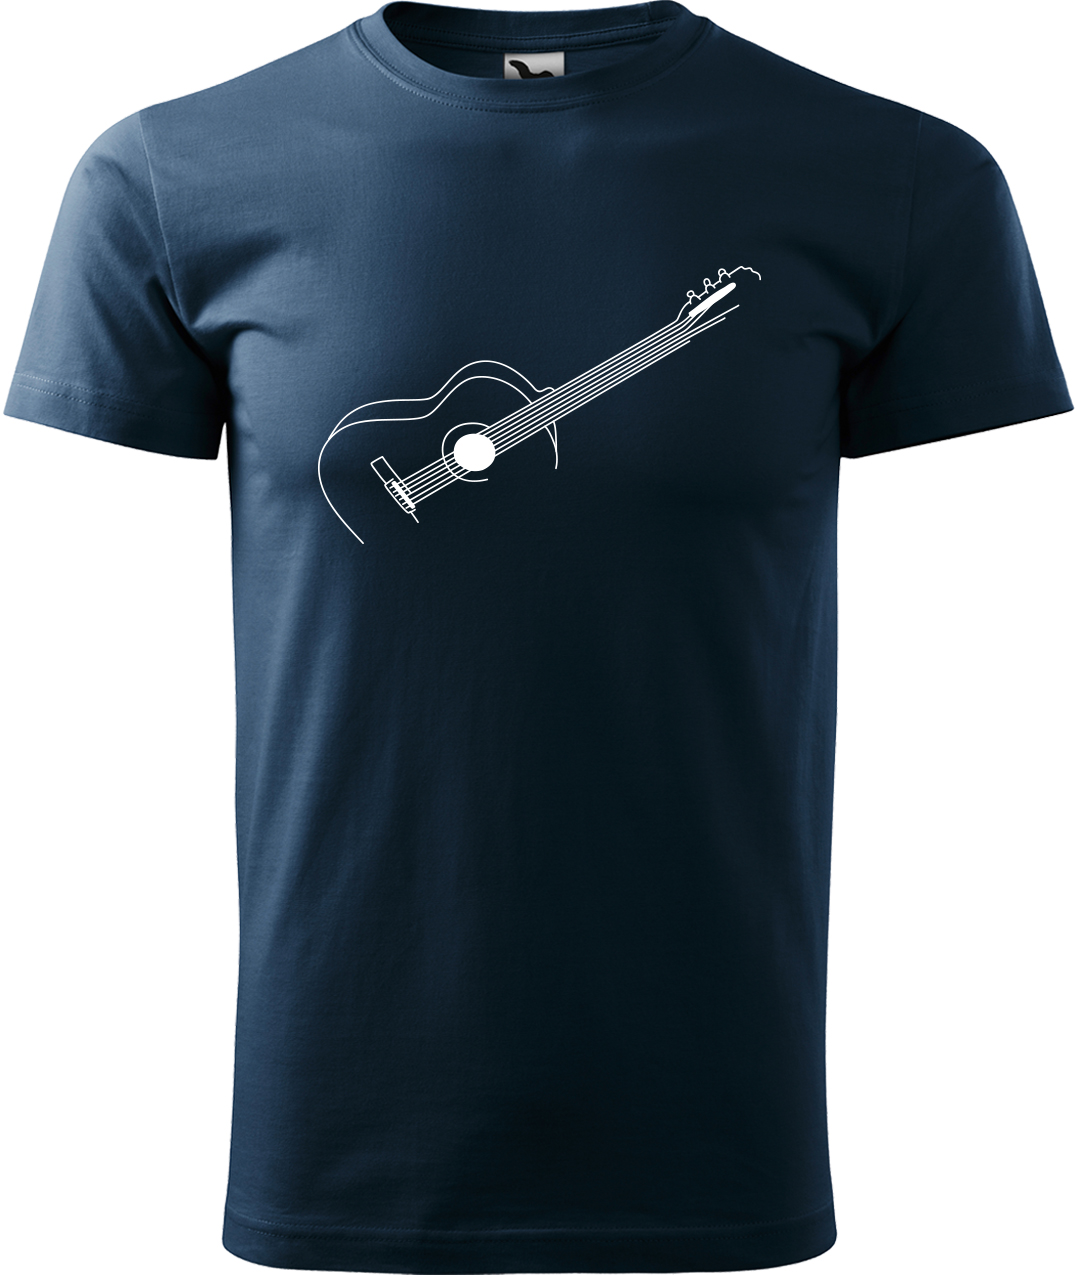 Pánské tričko s kytarou - Stylizovaná kytara Velikost: L, Barva: Námořní modrá (02), Střih: pánský